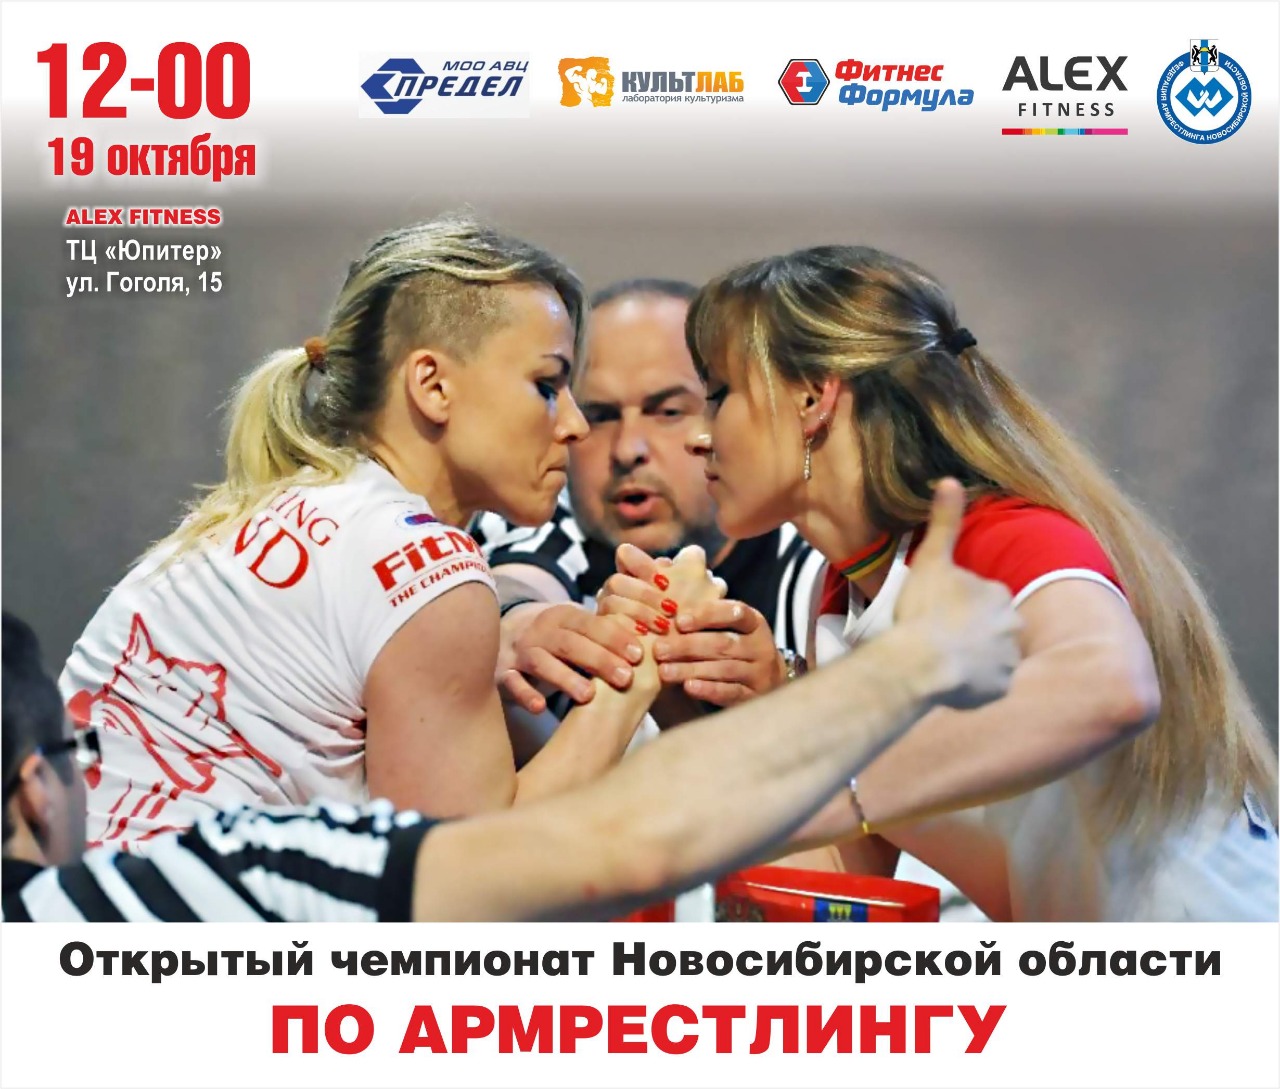 Открытый Чемпионат и Первенство Новосибирской области по армрестлингу 2019